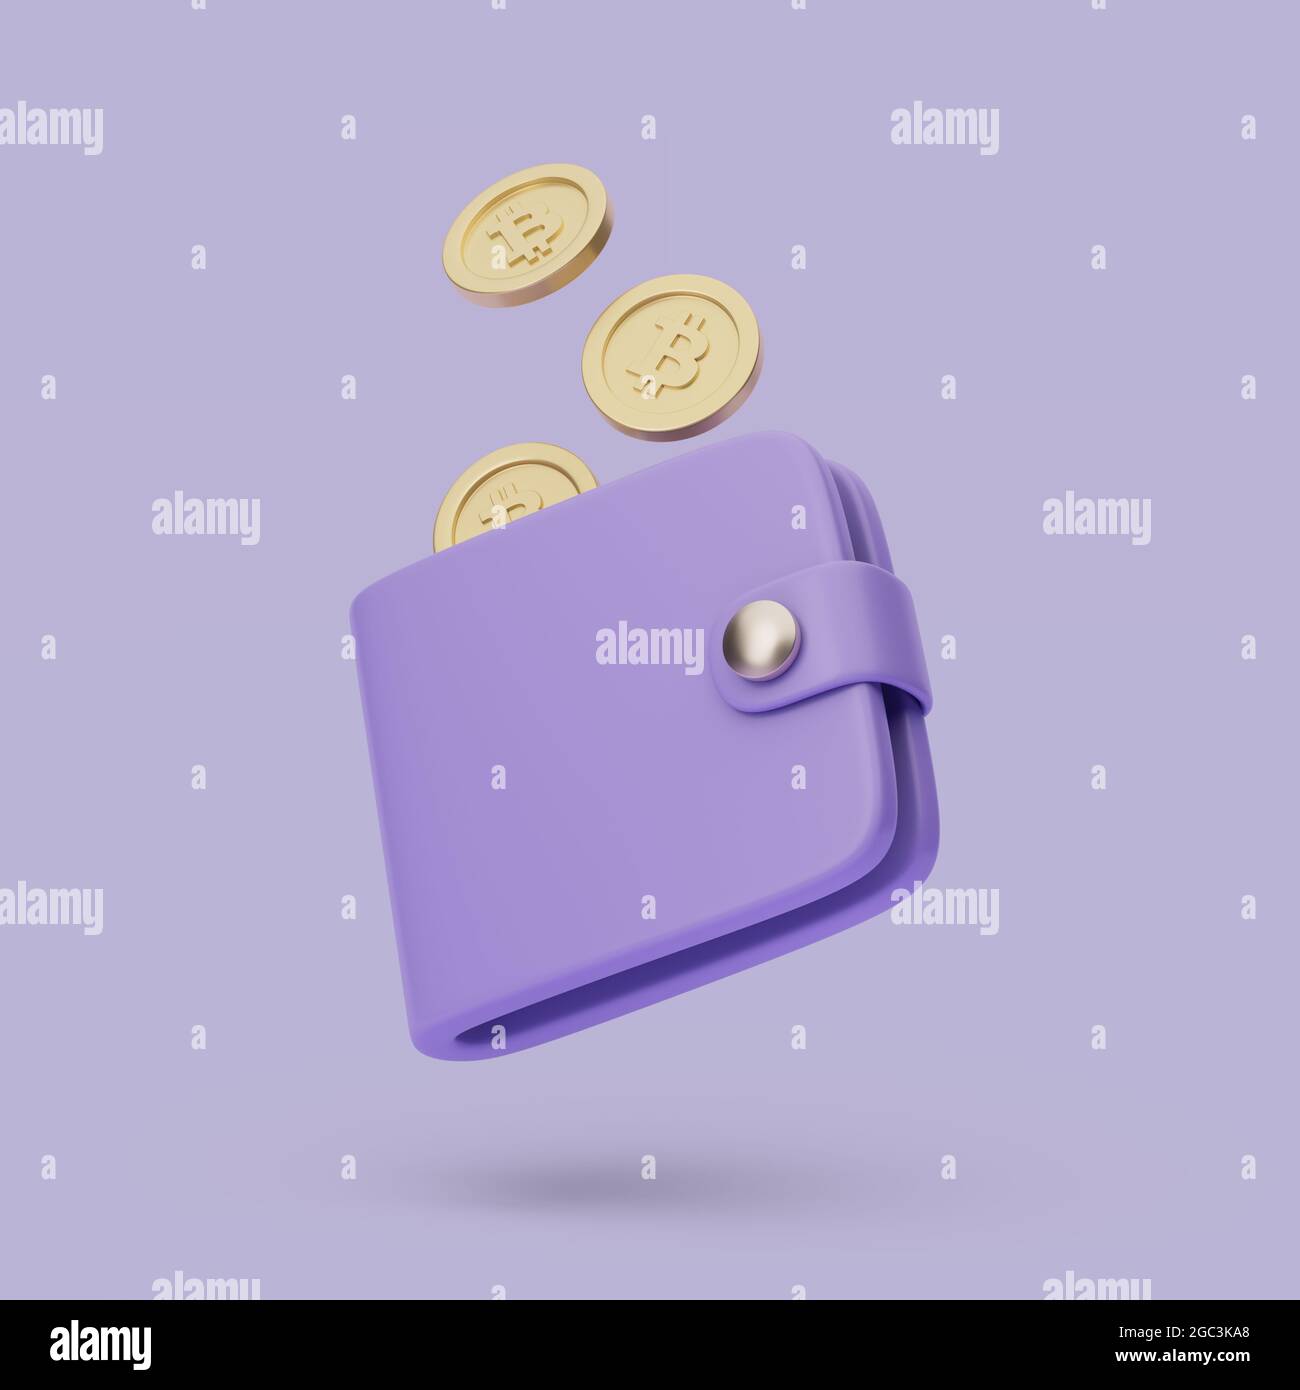 Icône porte-monnaie avec pièces. illustration de rendu 3d simple sur fond pastel. Objet isolé avec ombres douces Banque D'Images